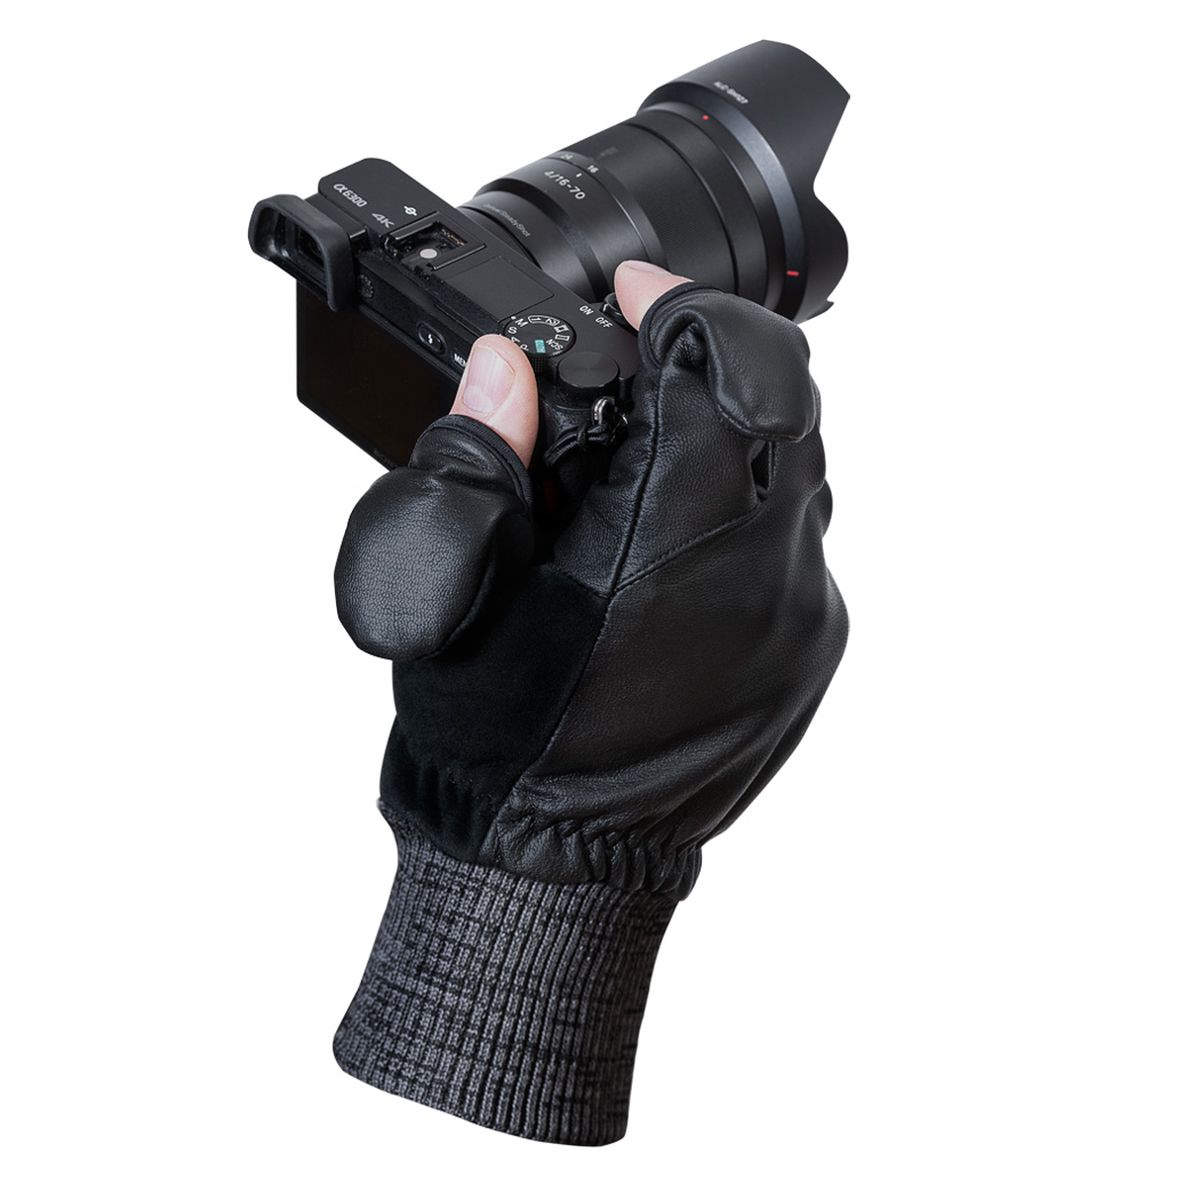 Vallerret Hatchet Leather Glove Black, Leder-Fotohandschuhe XL Schwarz